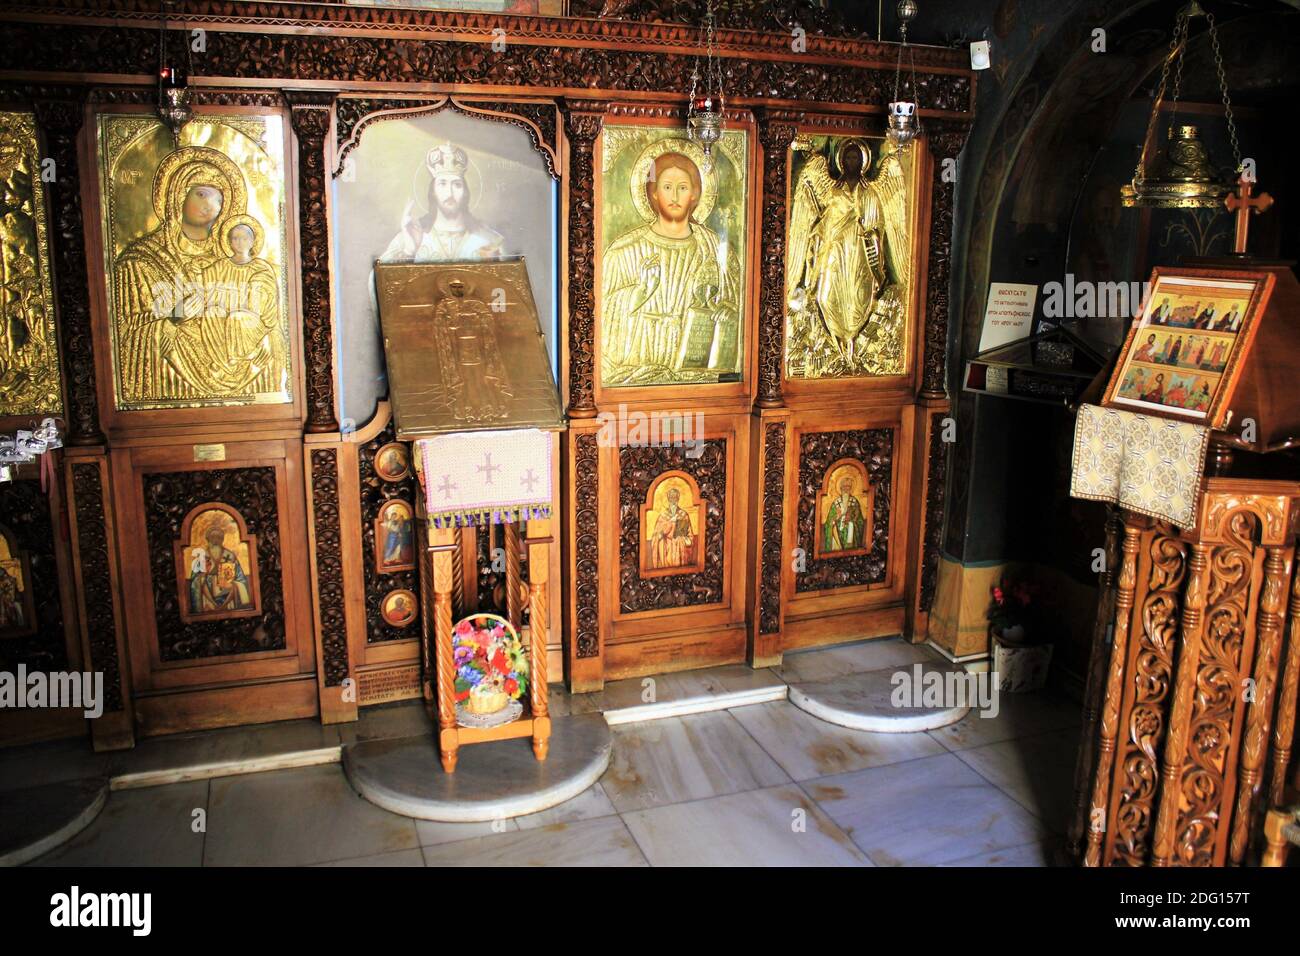 L'interno di una vecchia chiesa bizantina ortodossa ad Atene, Grecia - Marzo 12 2020. Foto Stock